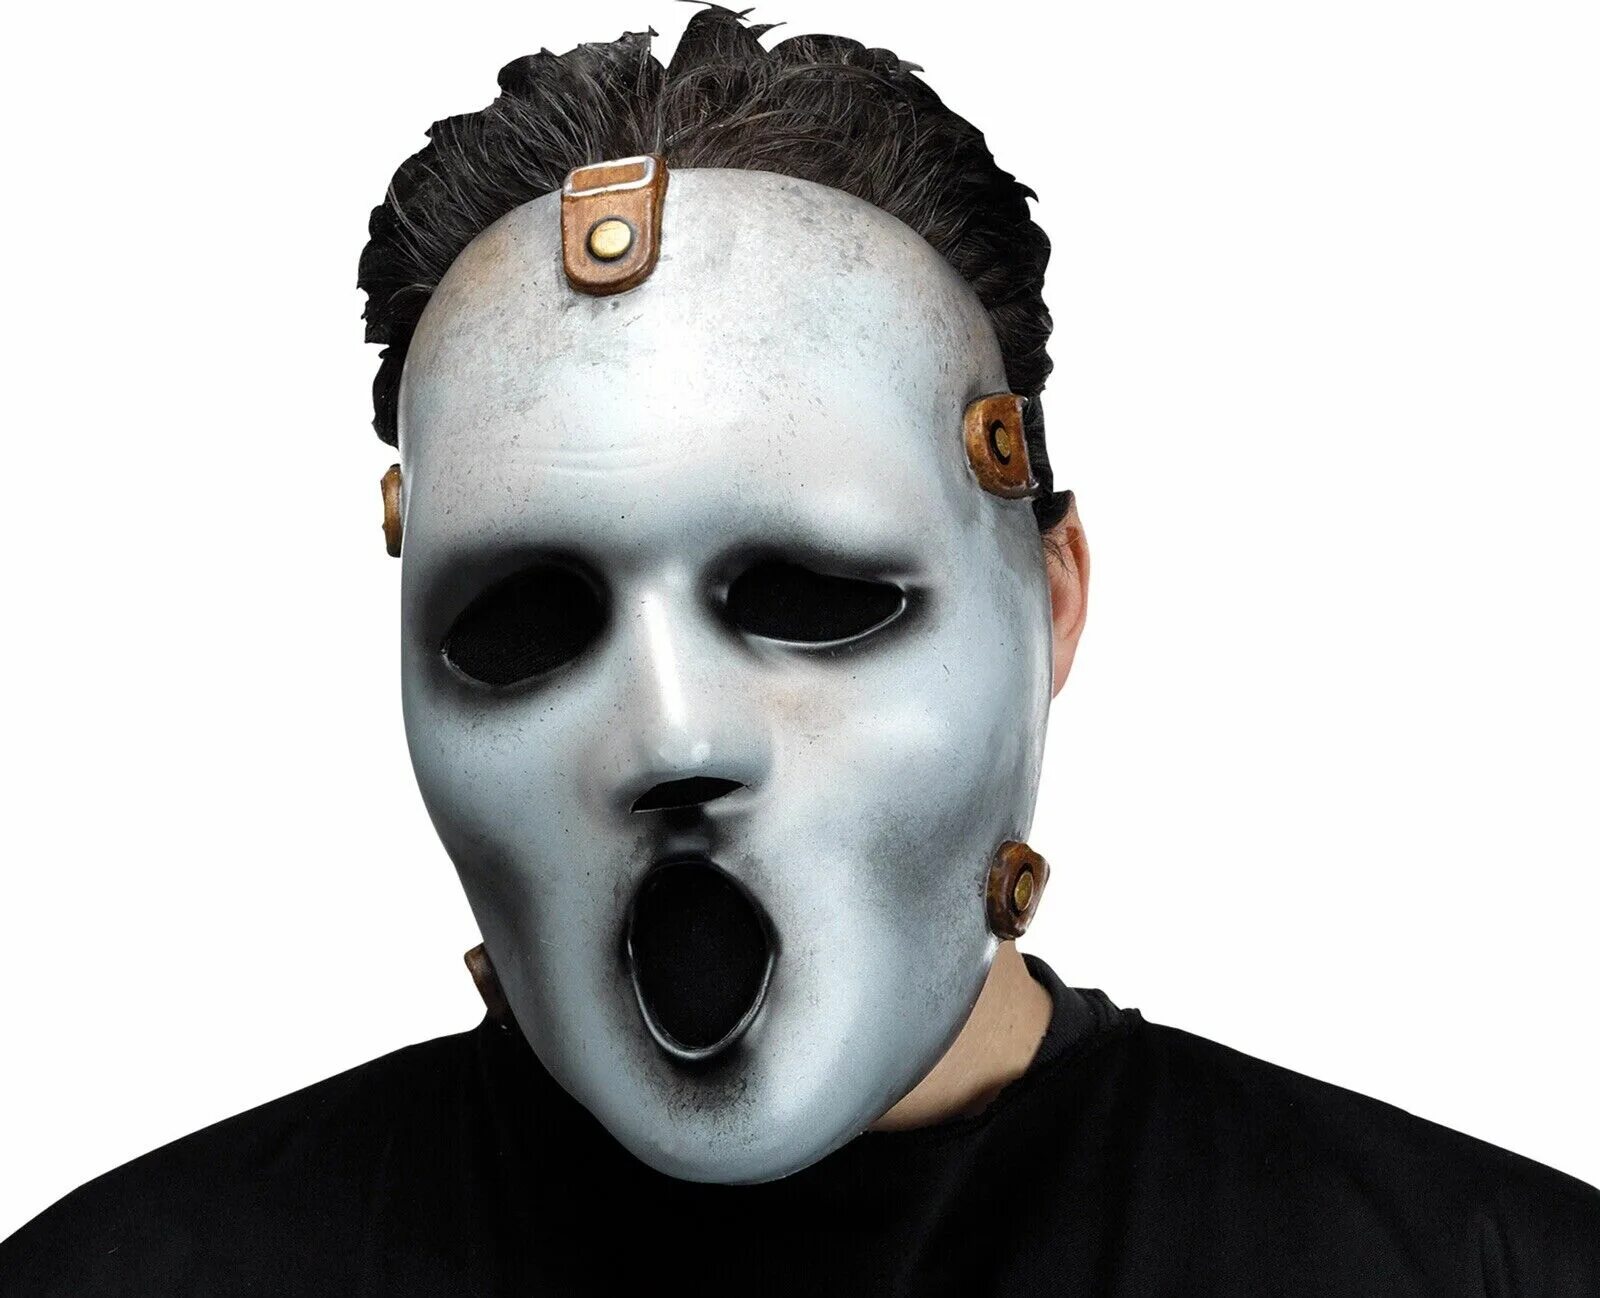 Scream маска. Купить без маски